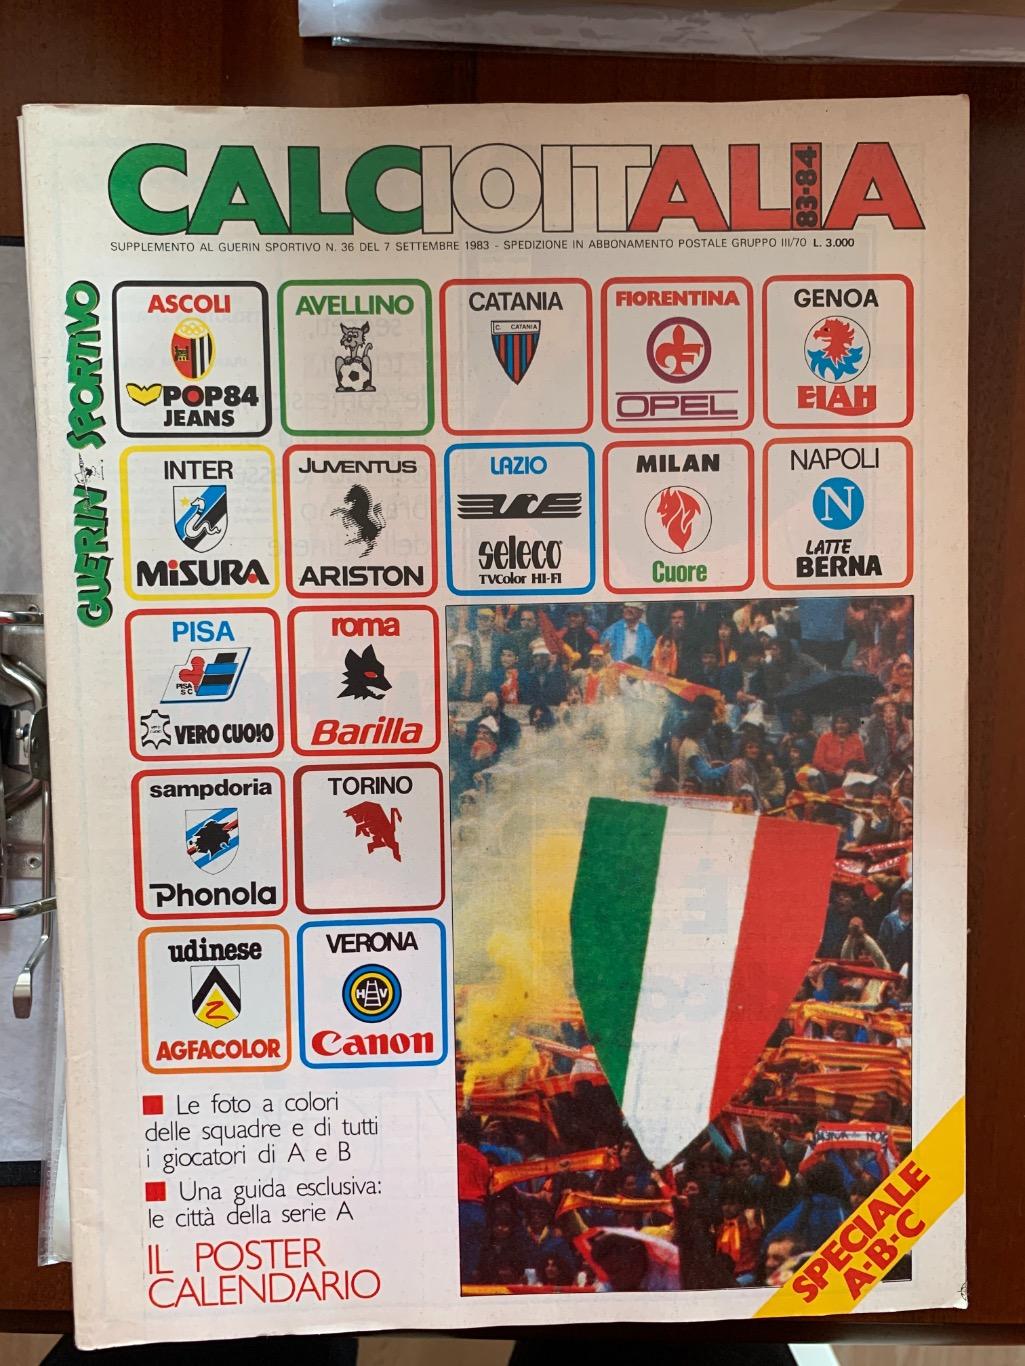 Guerin Sportivo Calcio 1983/84-представление участников чемпионата Италии!